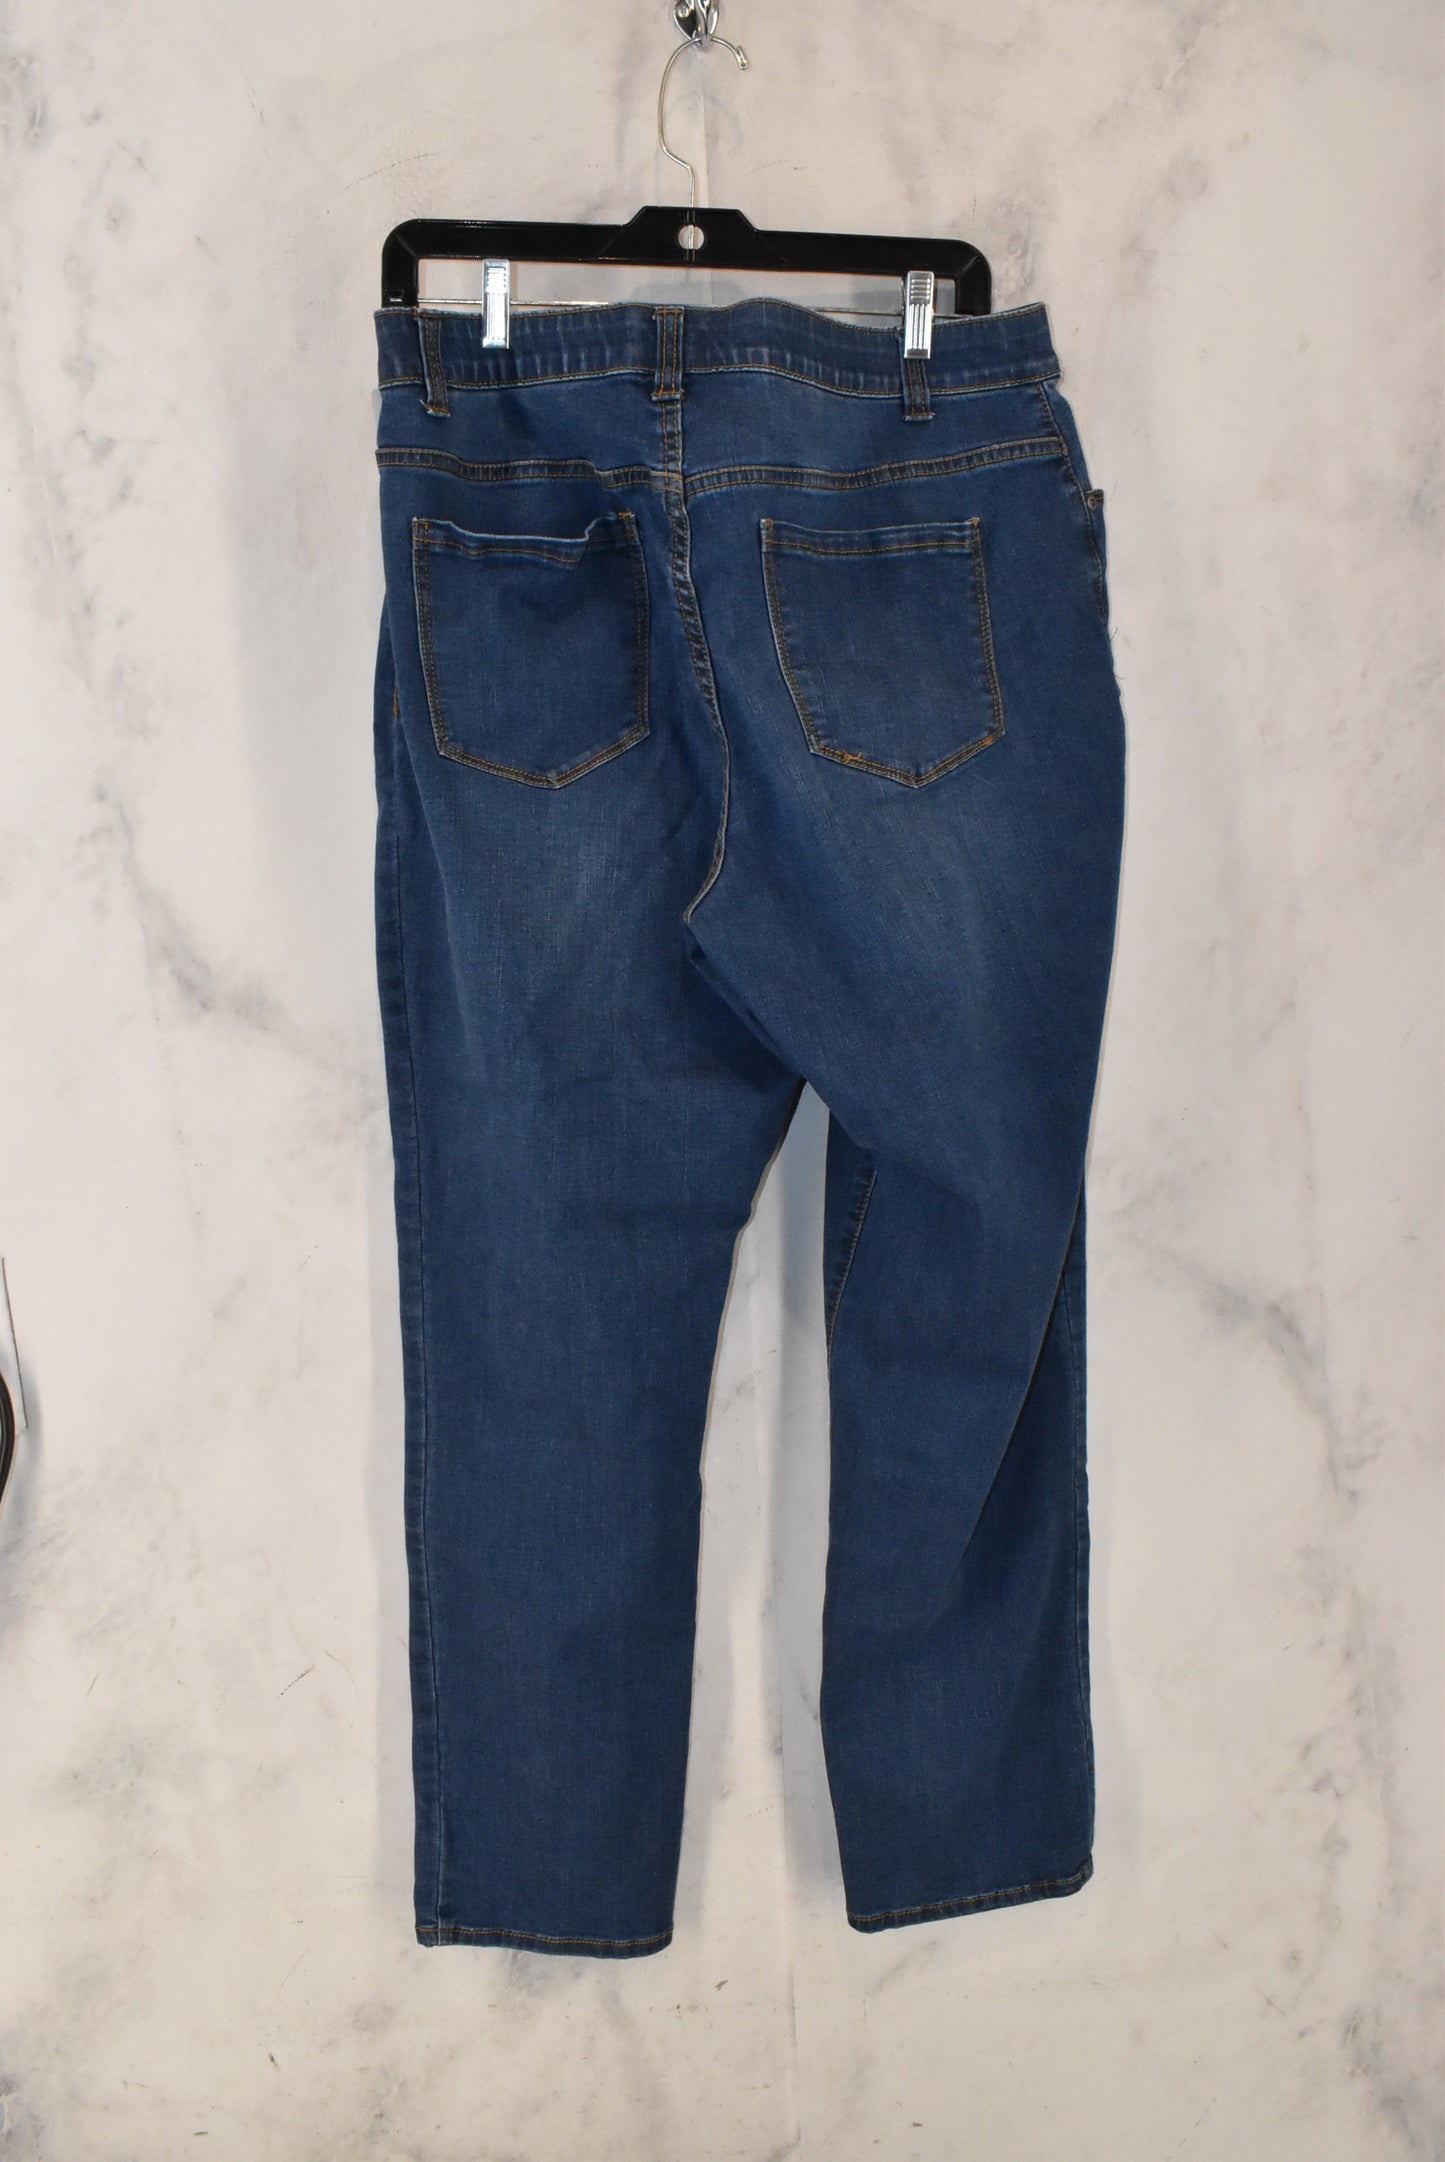 Jeans Skinny By West Bound  Size: 16